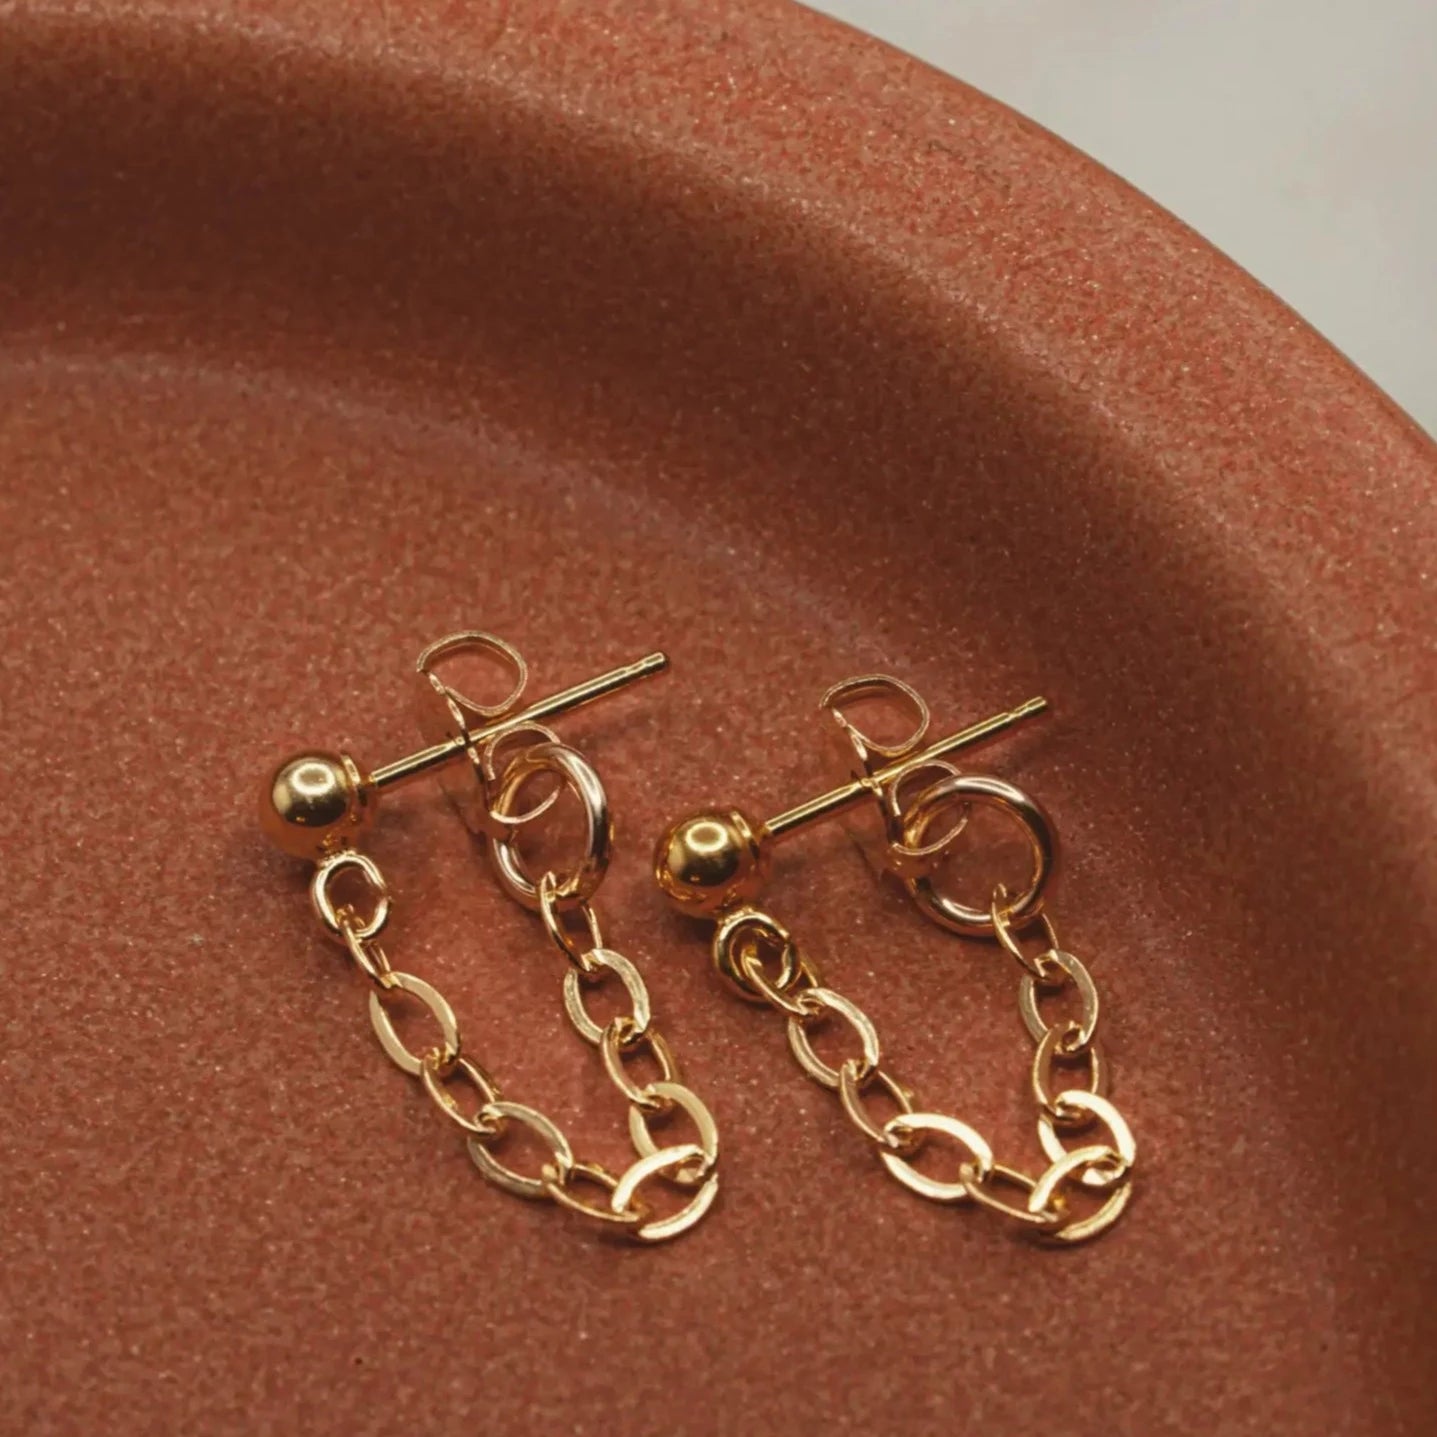 Chainlink hoop earrings